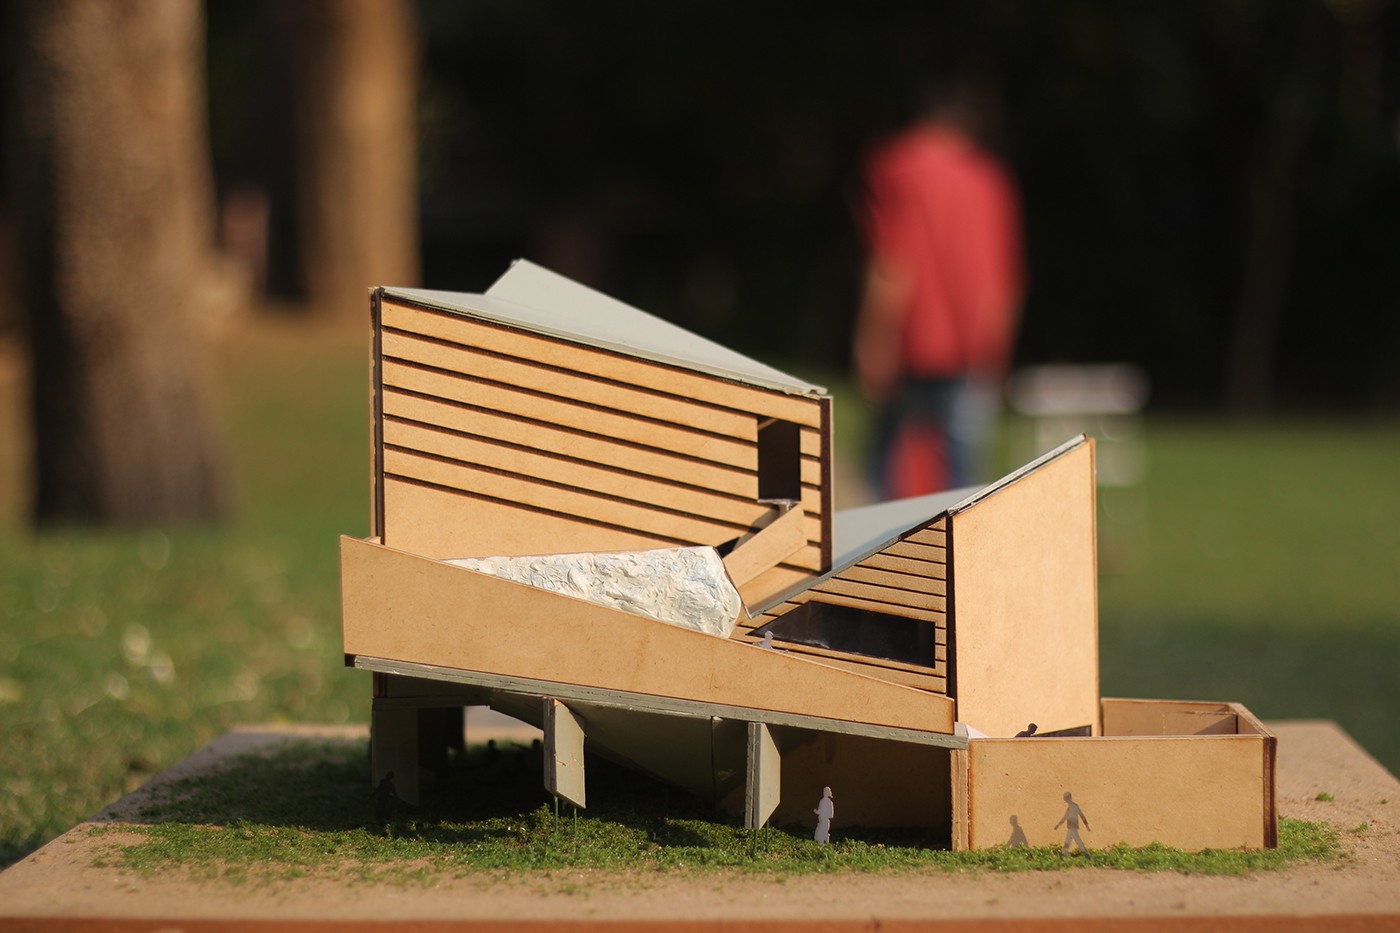 3D model Exhibition Design  parkour narrative set design  miniature set pavilion experience design Spatial Design